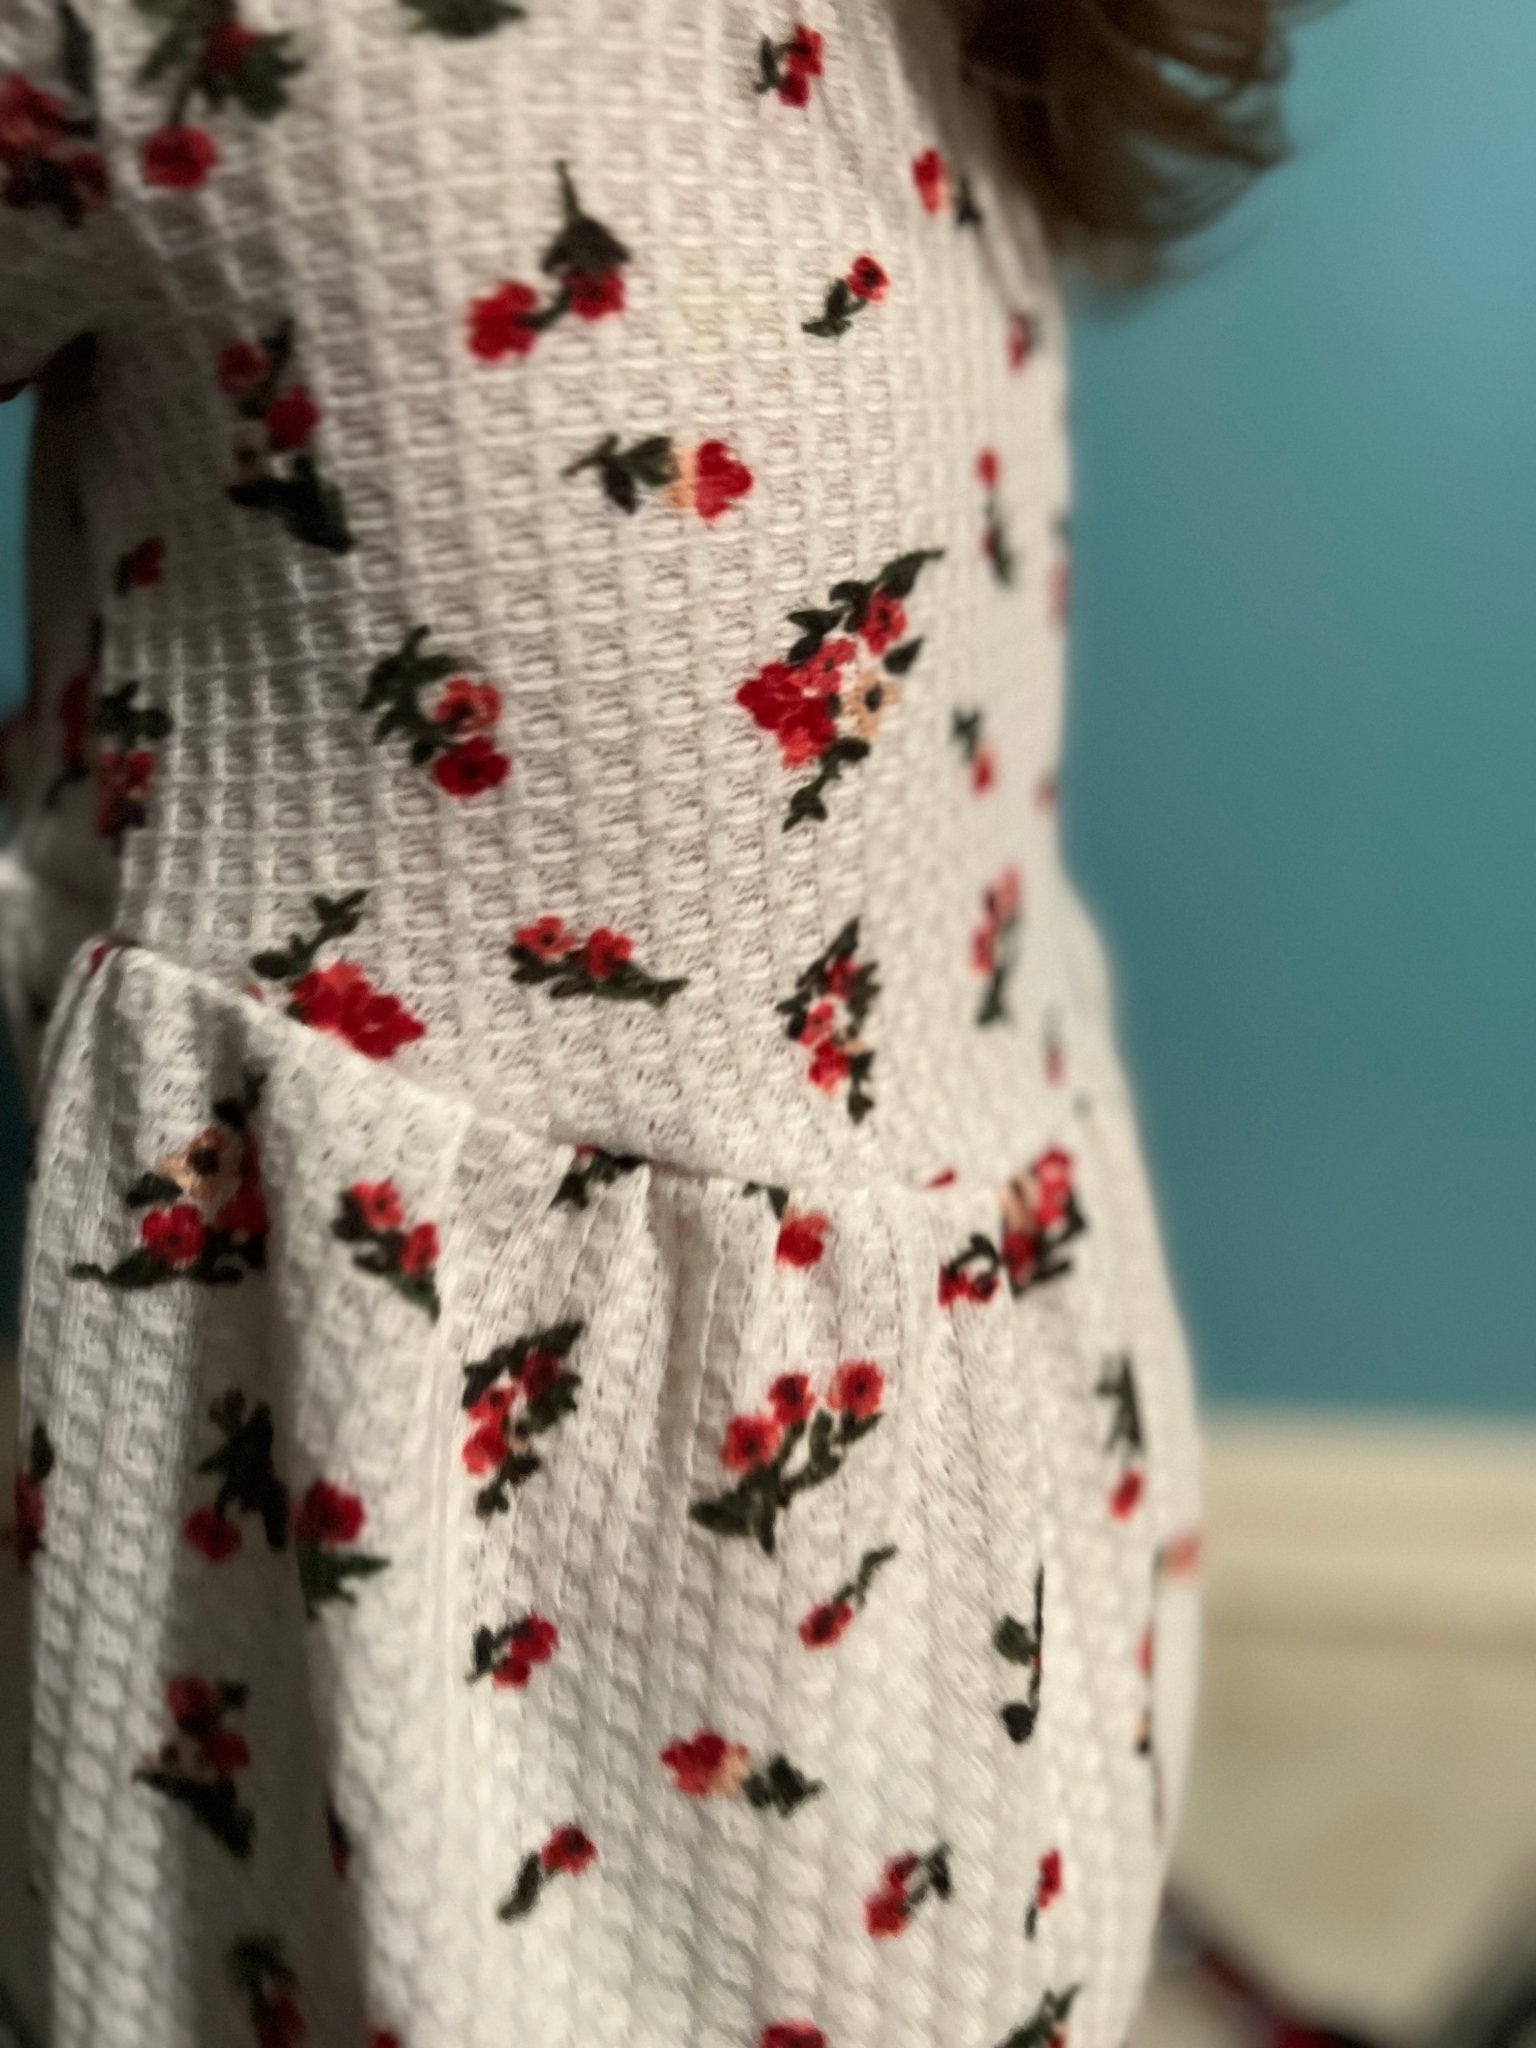 Simone Florals on White, Waffle Knit Fabric - Boho Fabrics